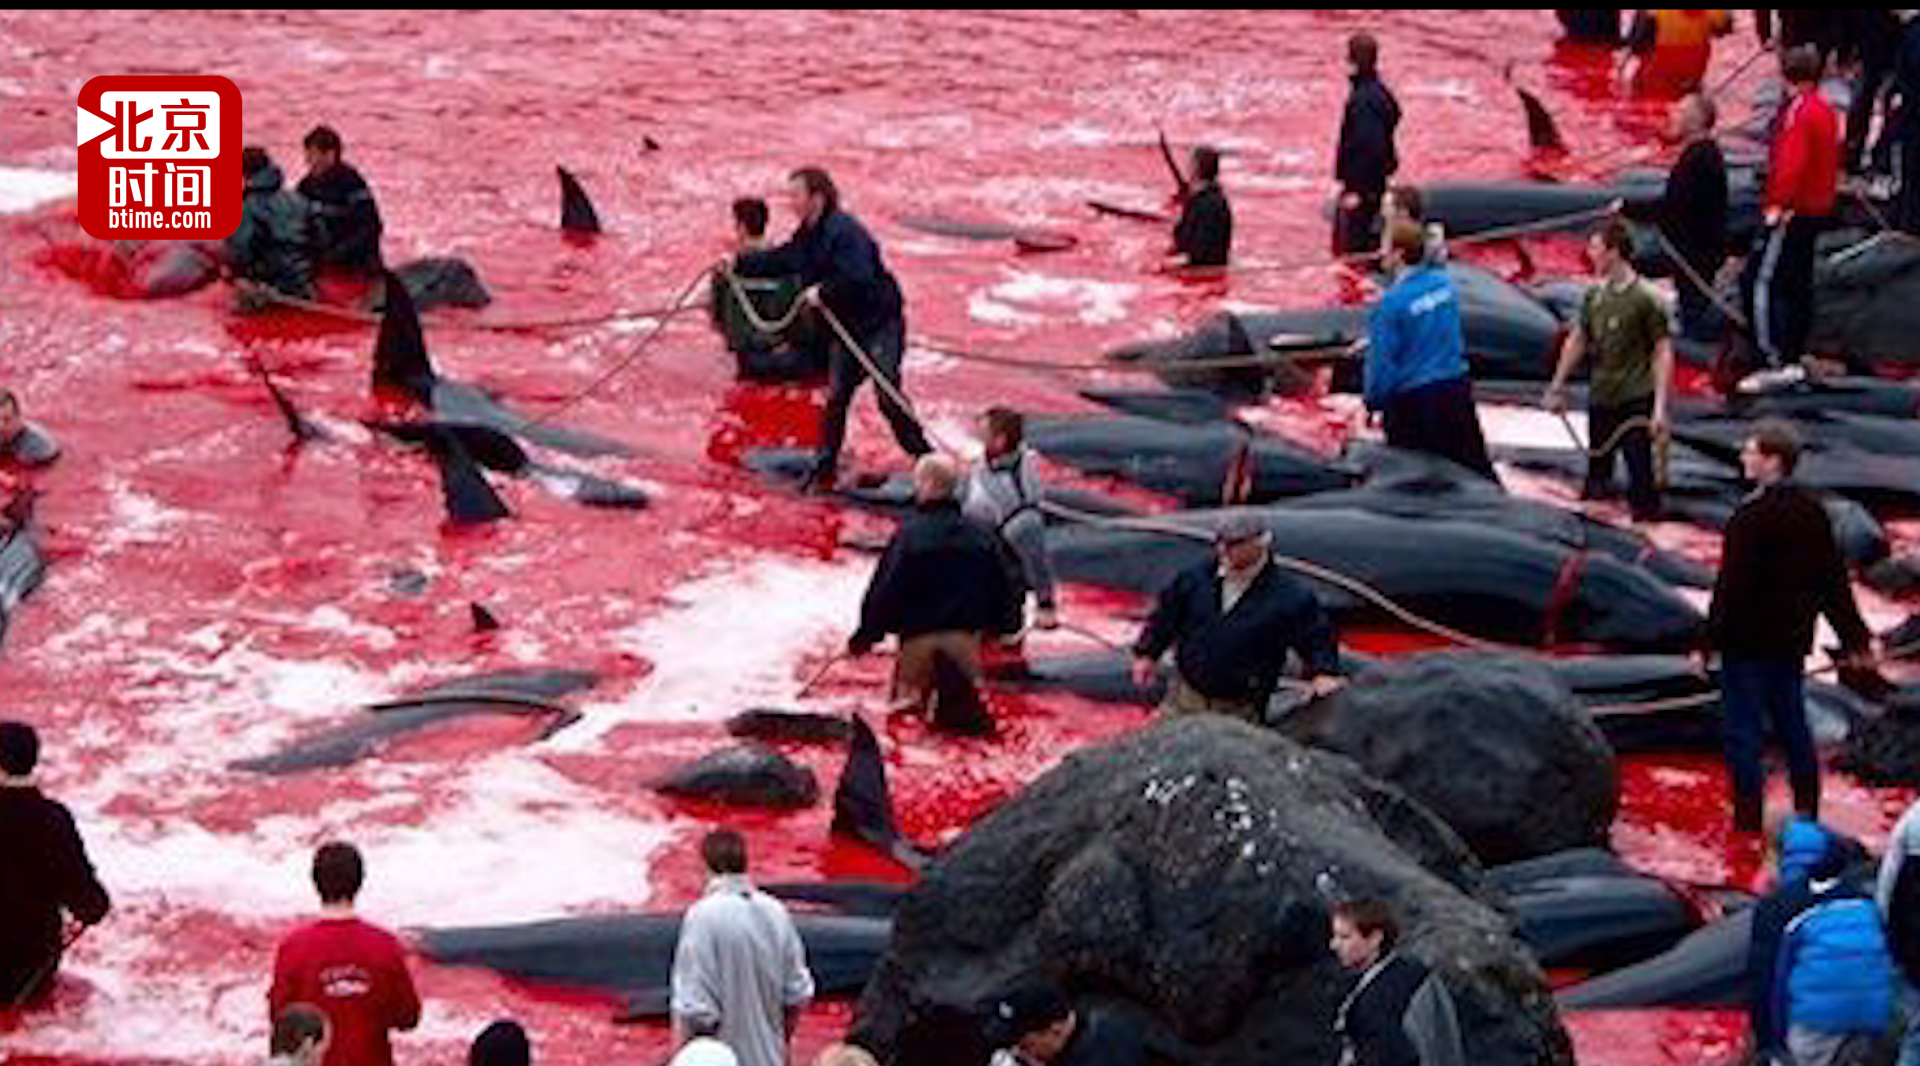 触目惊心!丹麦渔民捕杀180头鲸鱼只为过冬 对血染海湾习以为常